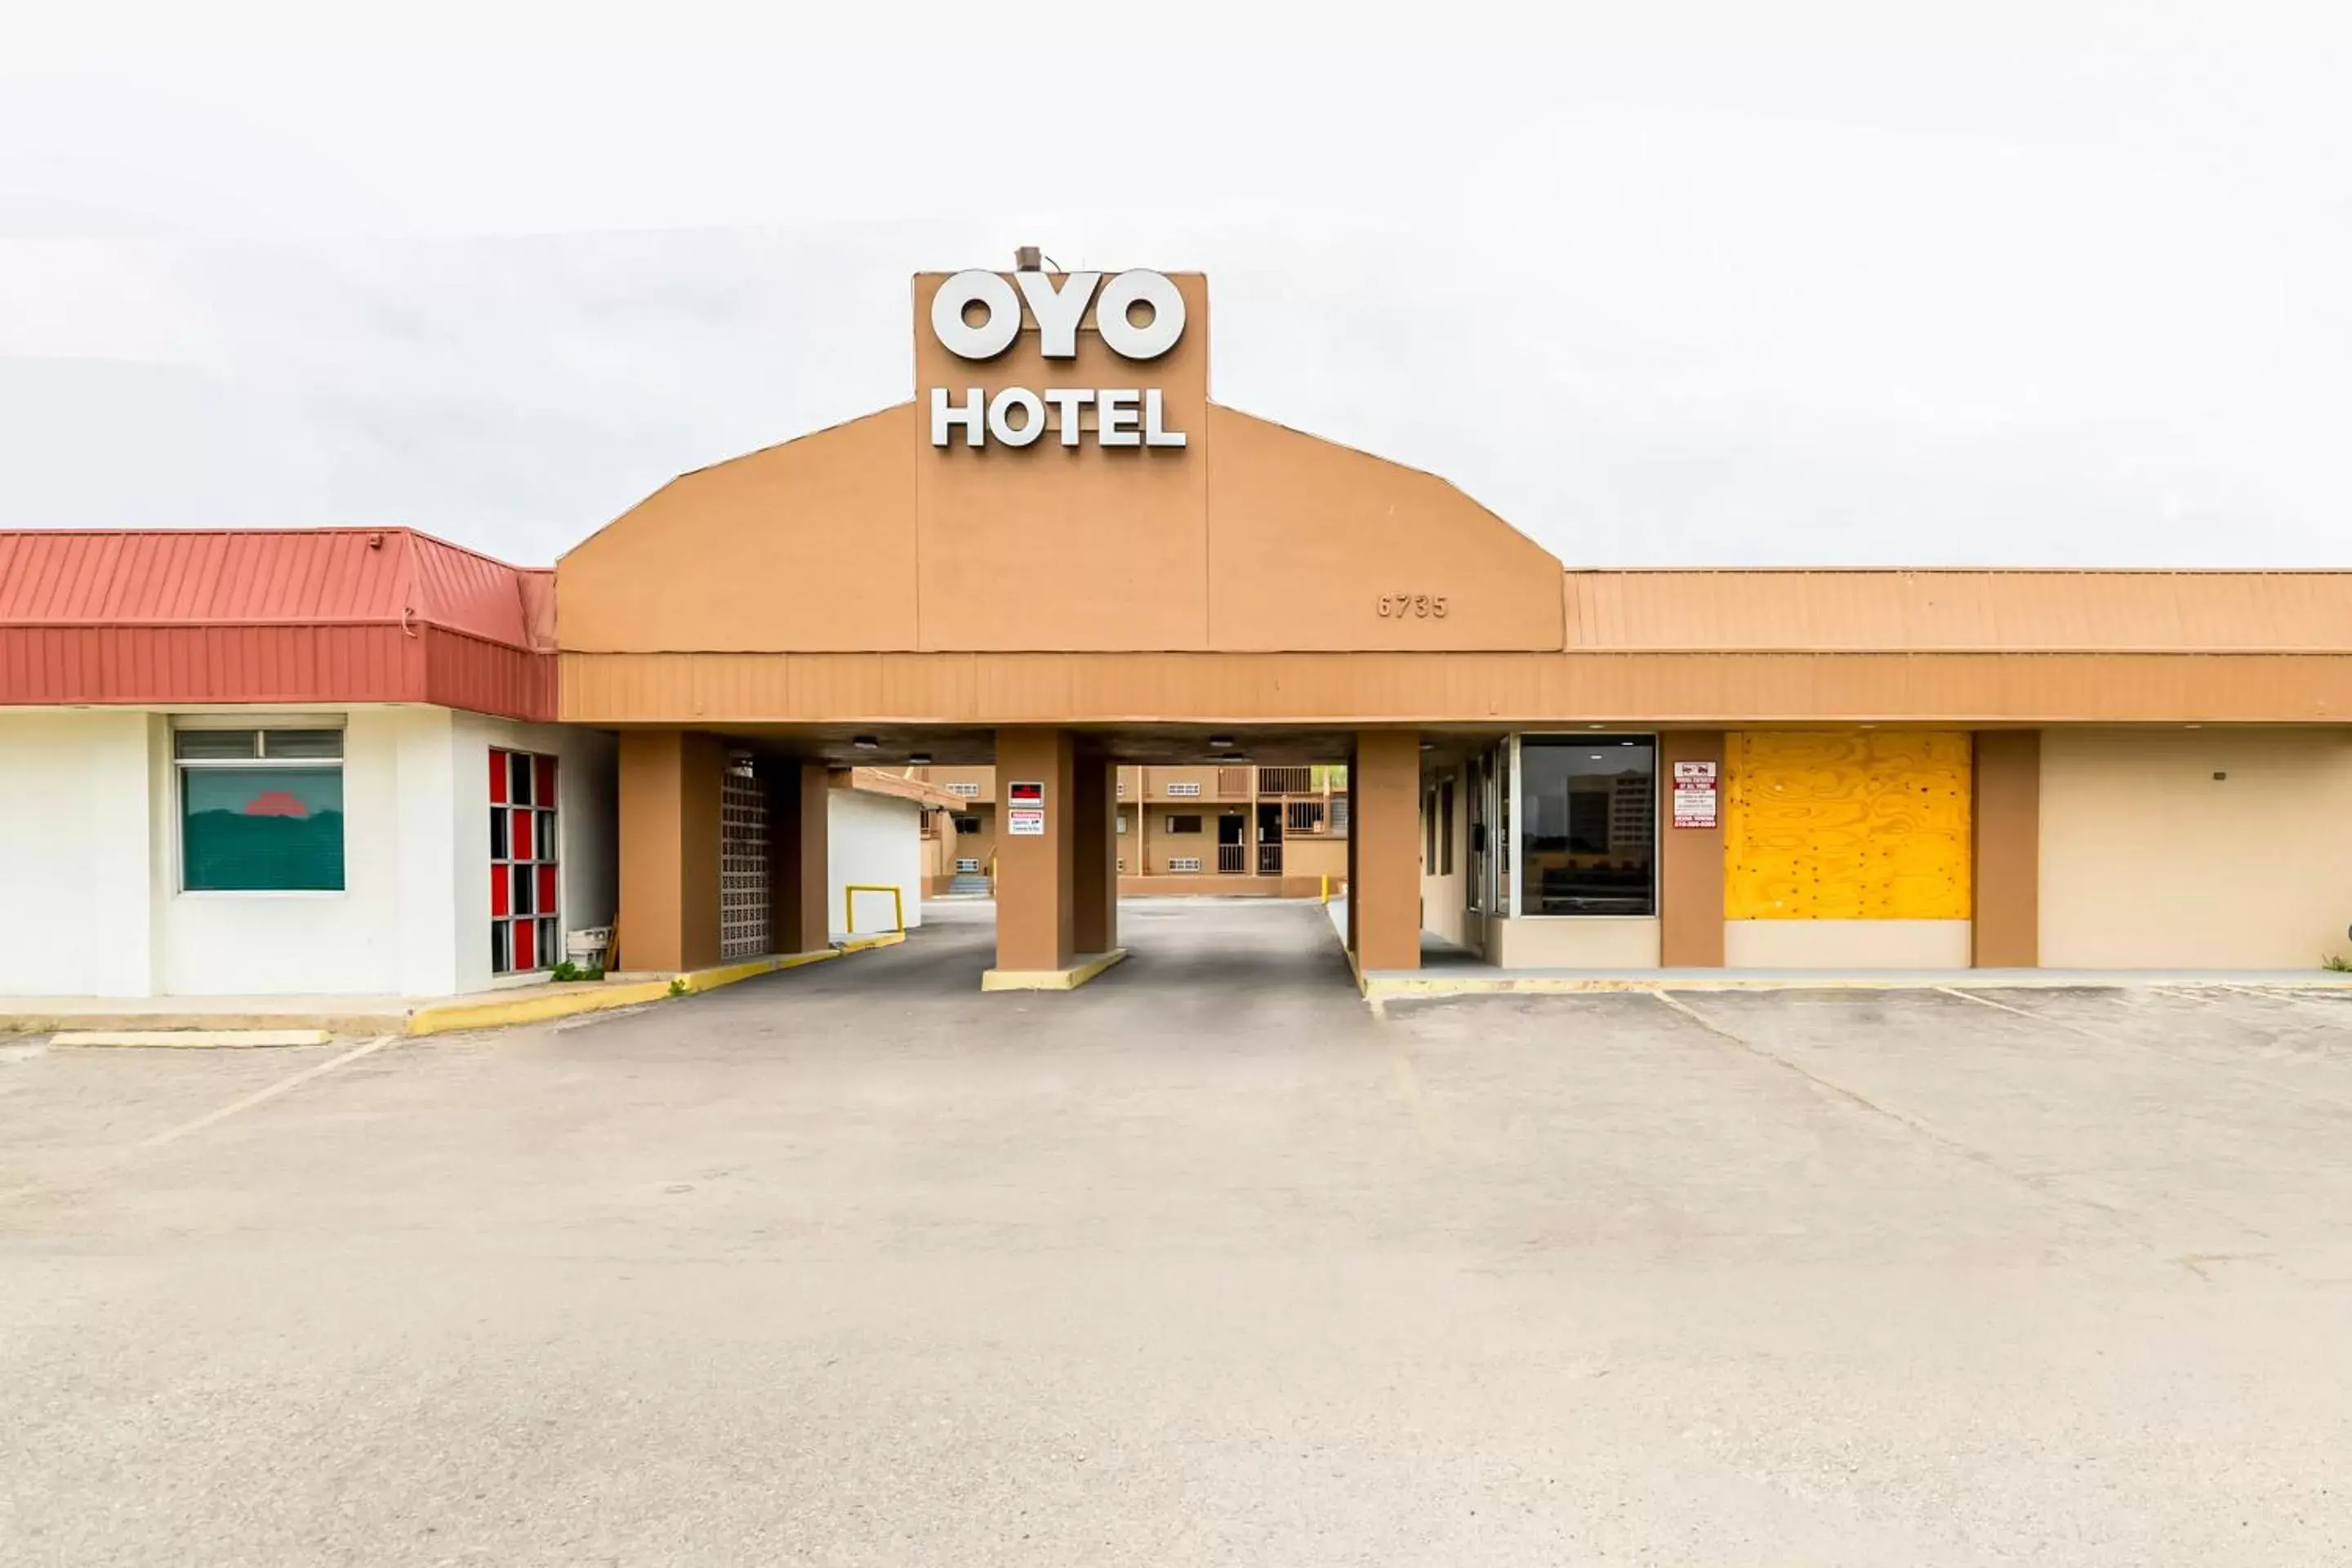 Facade/entrance, Property Building in Oyo Hotel San Antonio Lackland AFB Seaworld Hwy 90 W